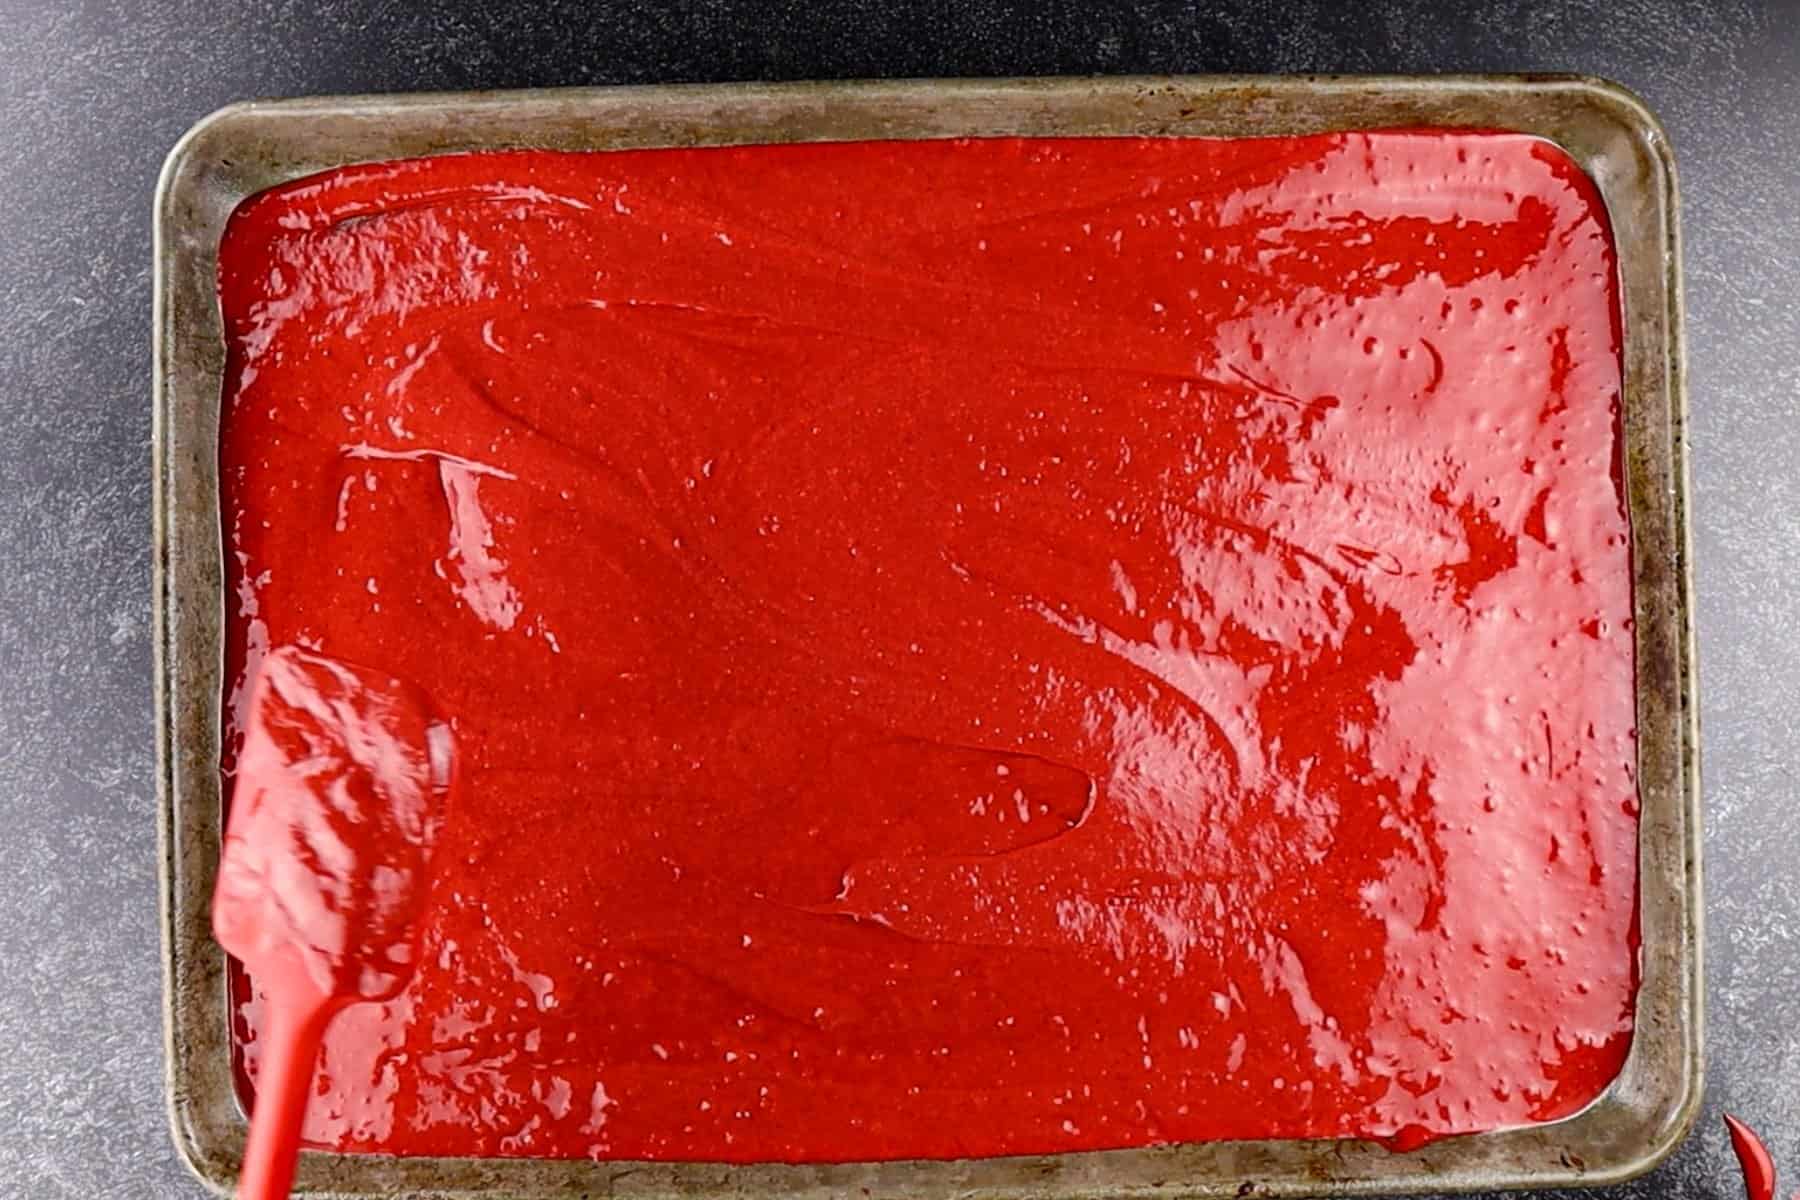 red velvet batter in pan